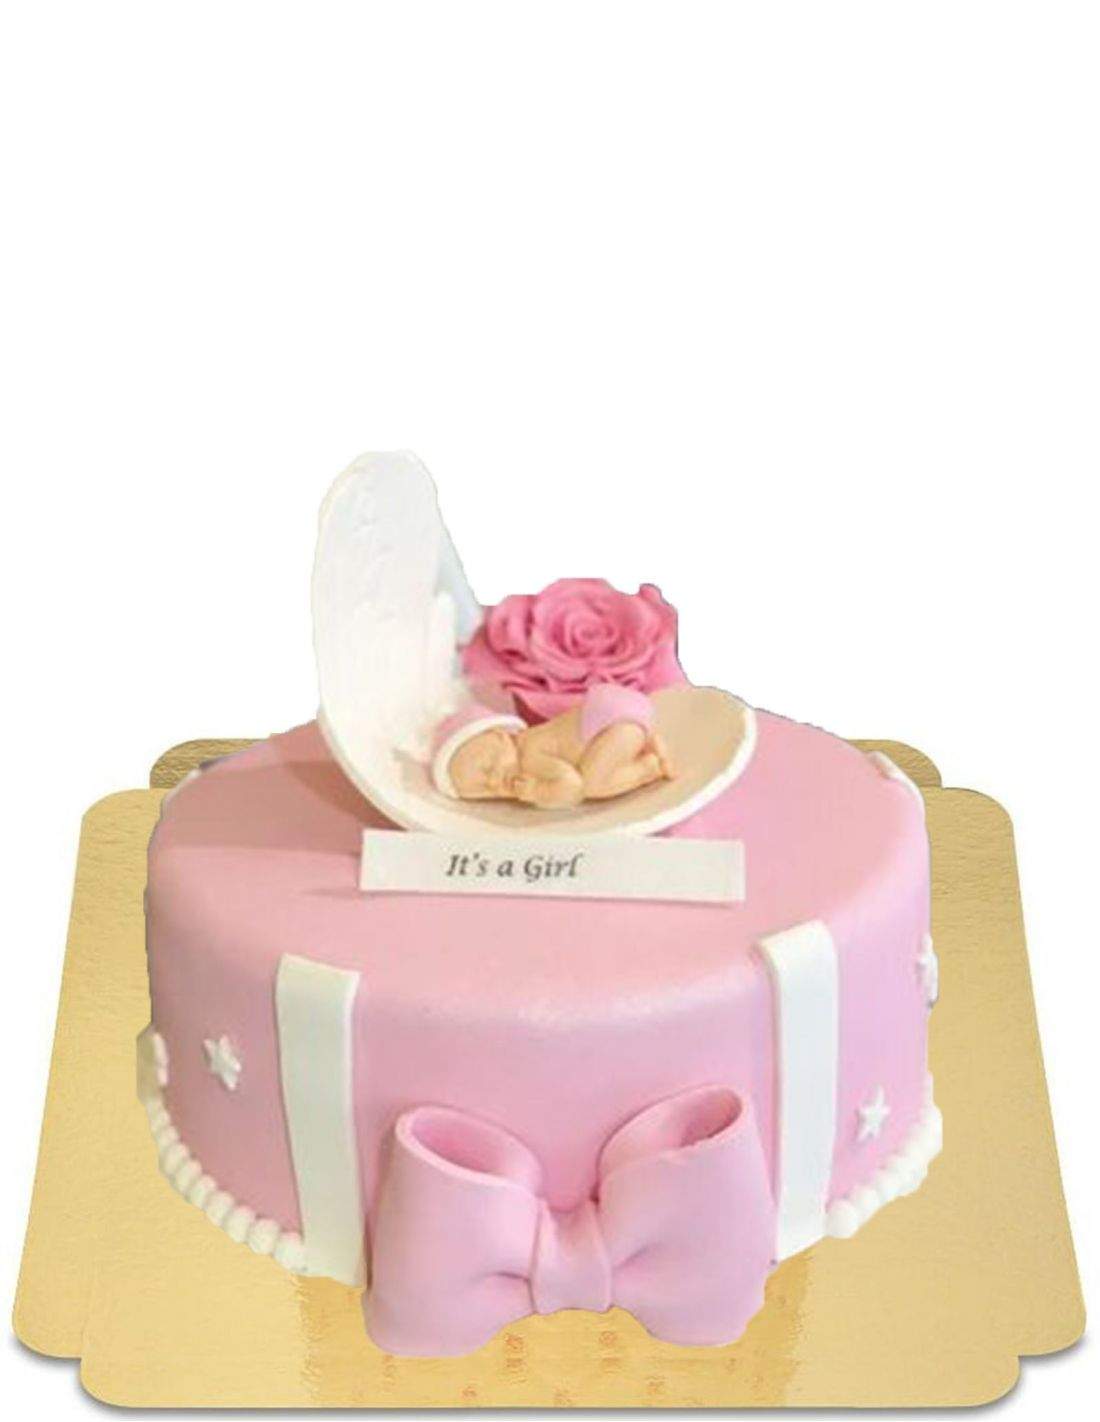 Gâteau de baptème ou naissance rose pastel avec bébé et noeud vegan